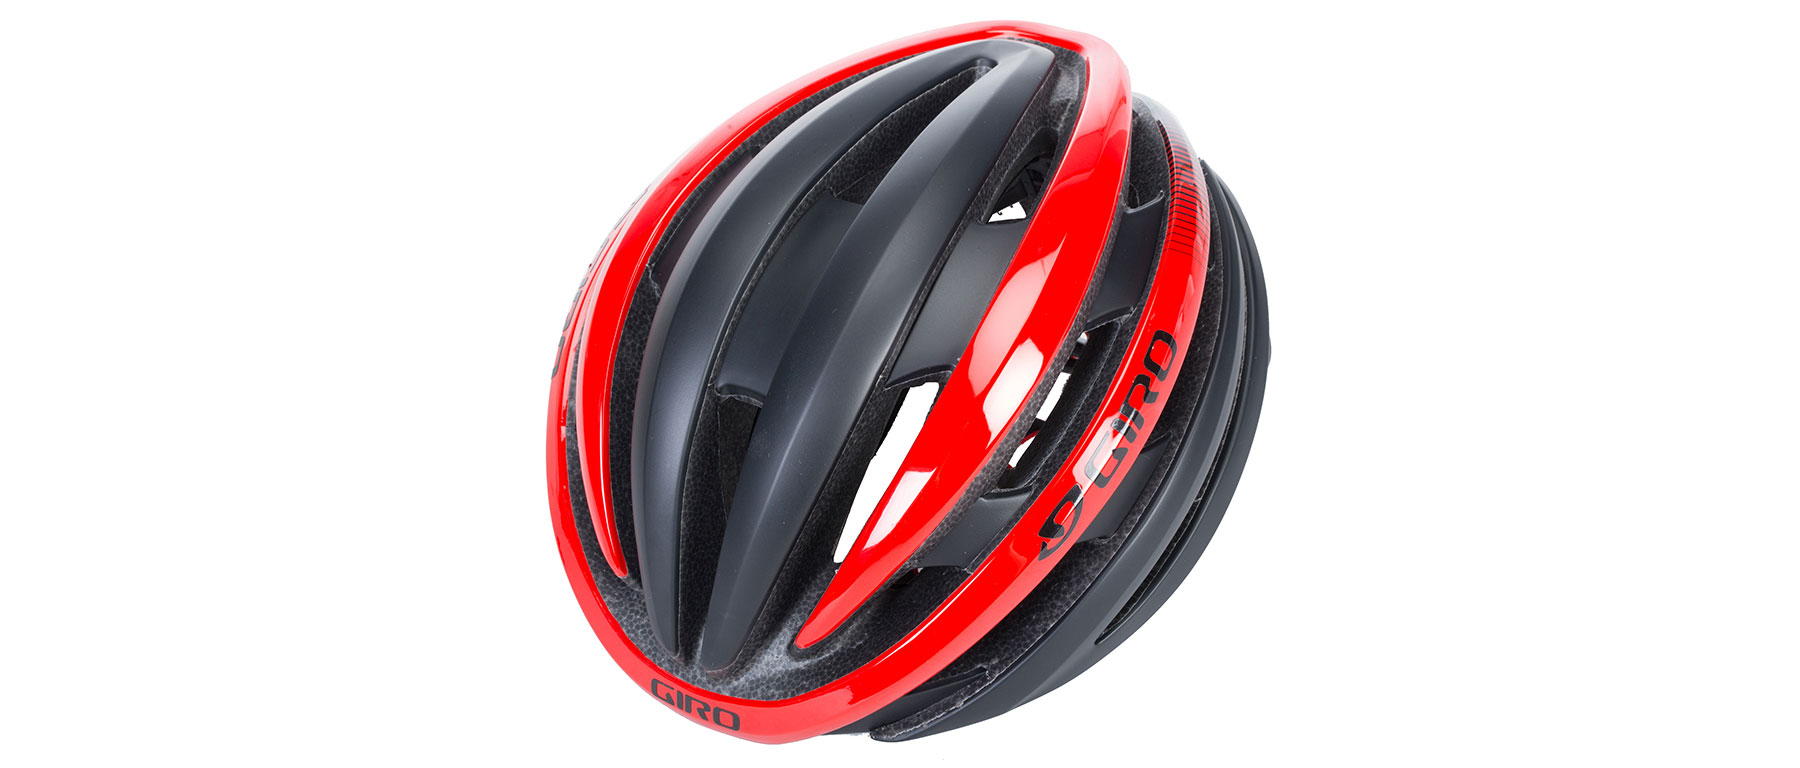 Giro Cinder MIPS Helmet 2017